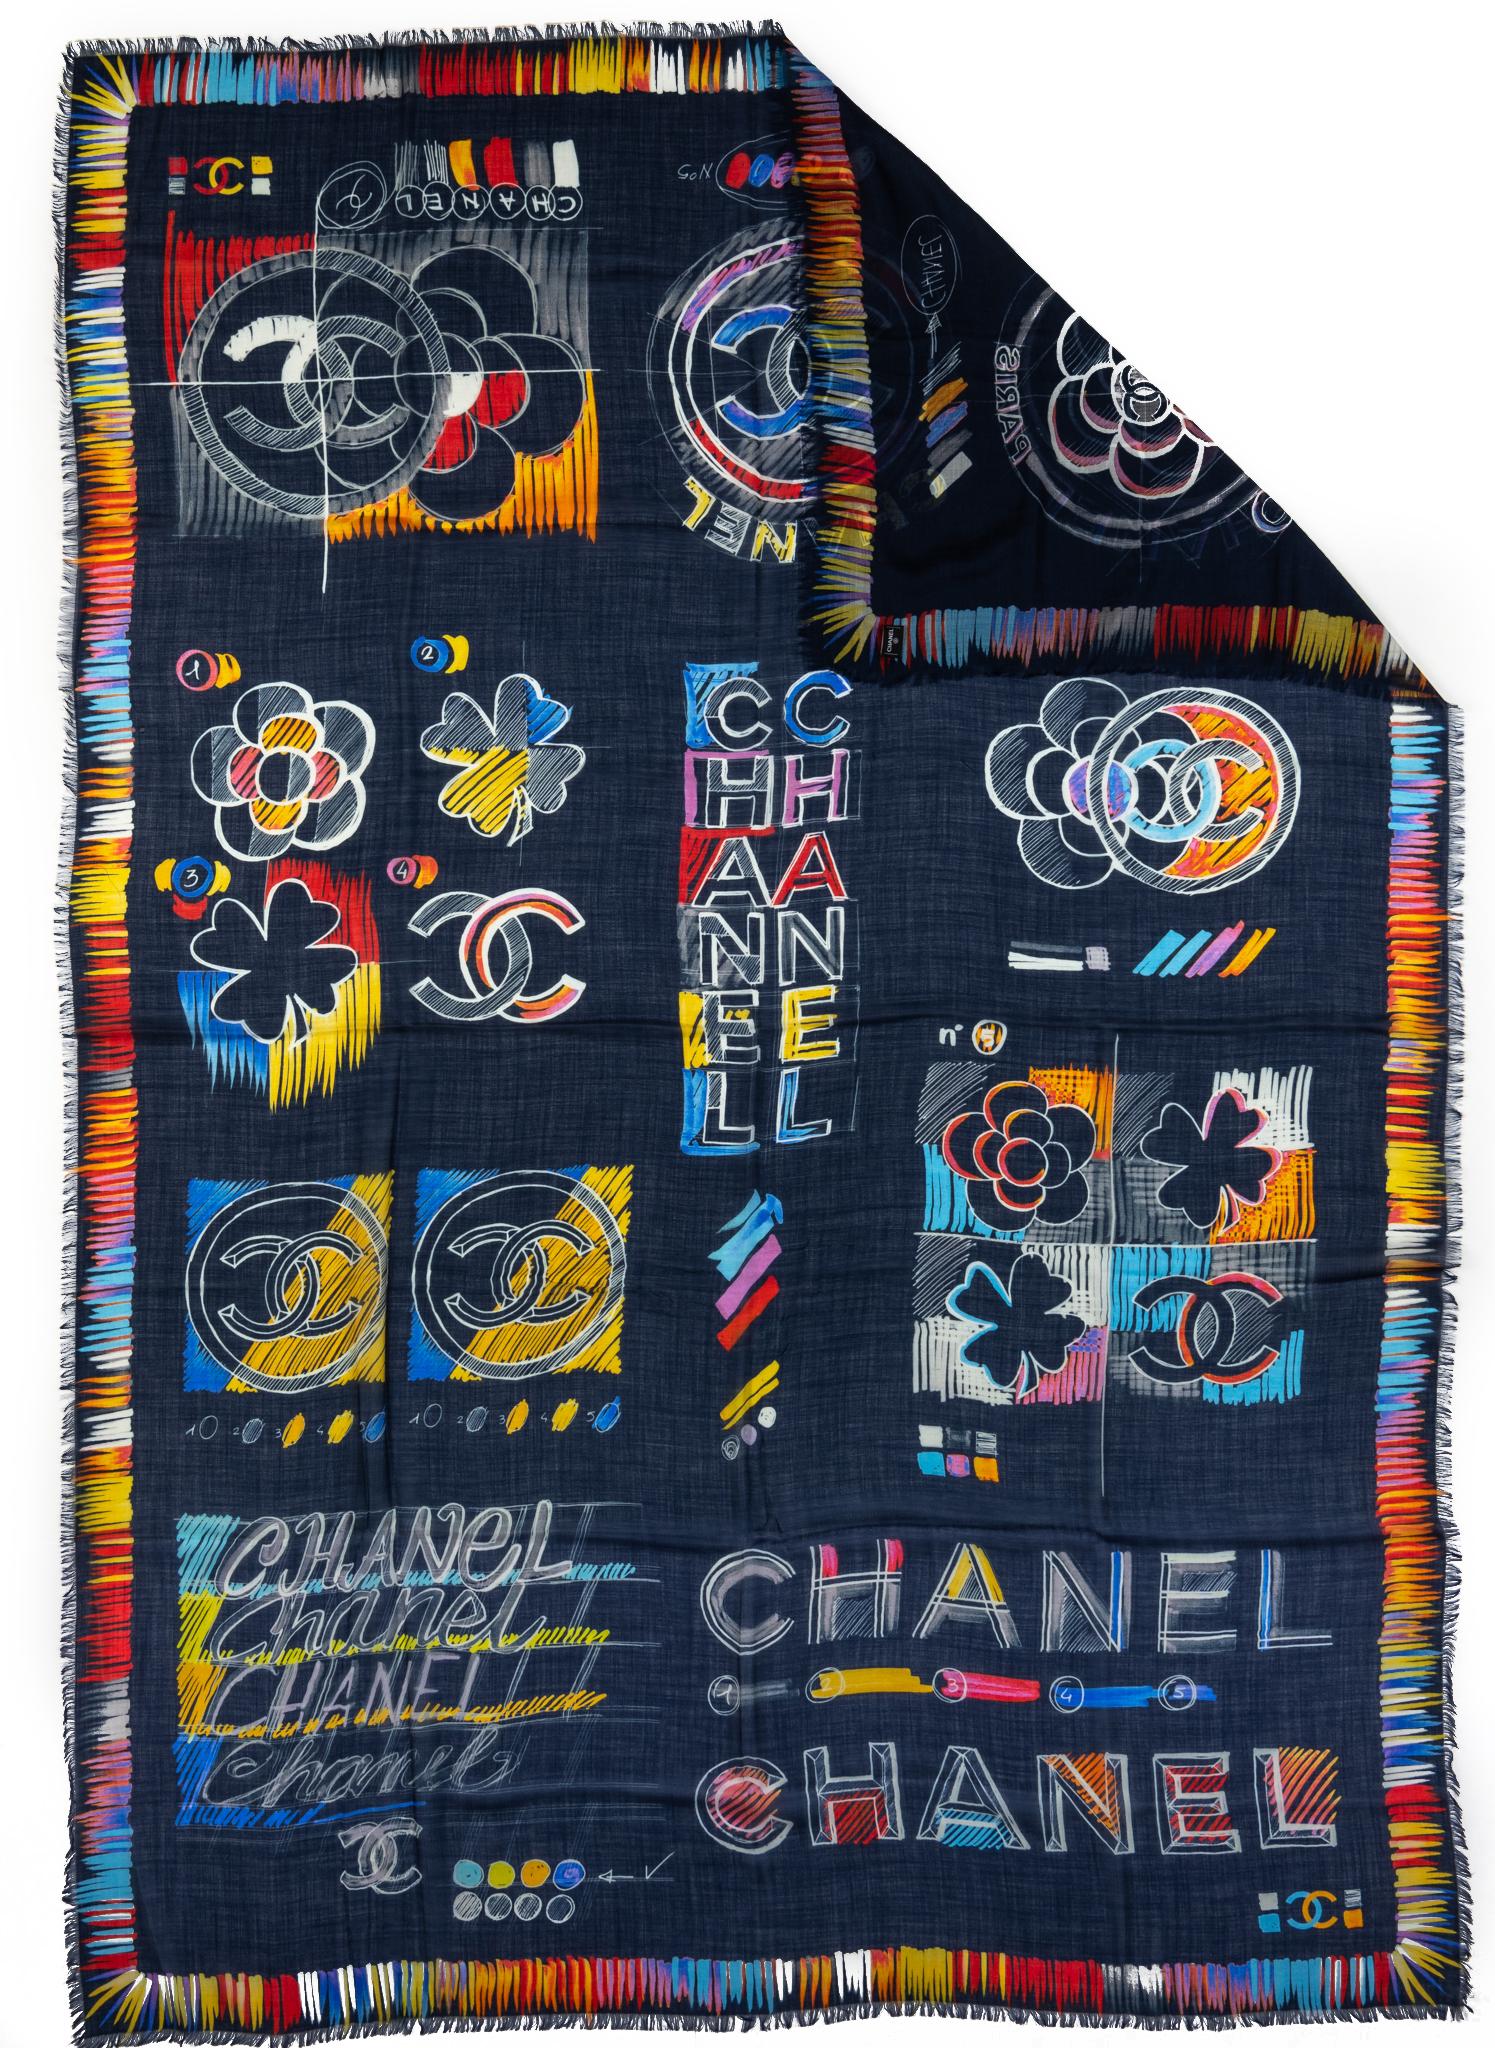 Châle neuf en cachemire et soie noir et logo multicolore de la marque Chanel. Étiquette d'entretien.